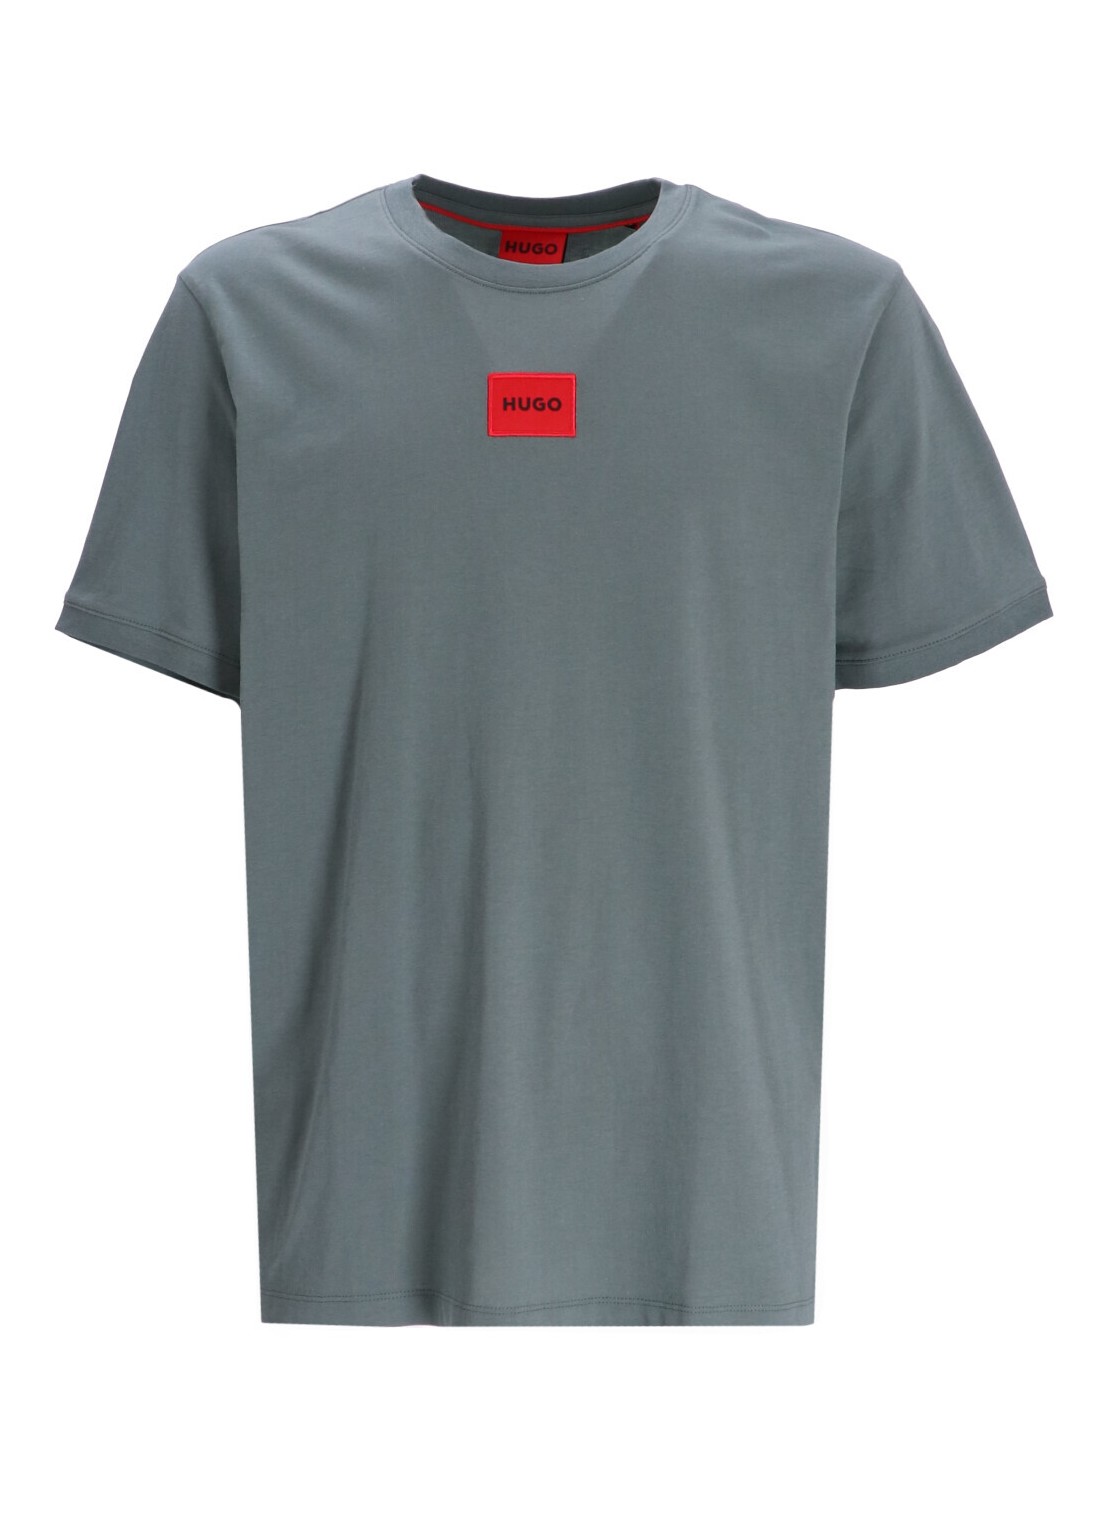 Camiseta hugo t-shirt man diragolino212 50447978 307 talla L
 